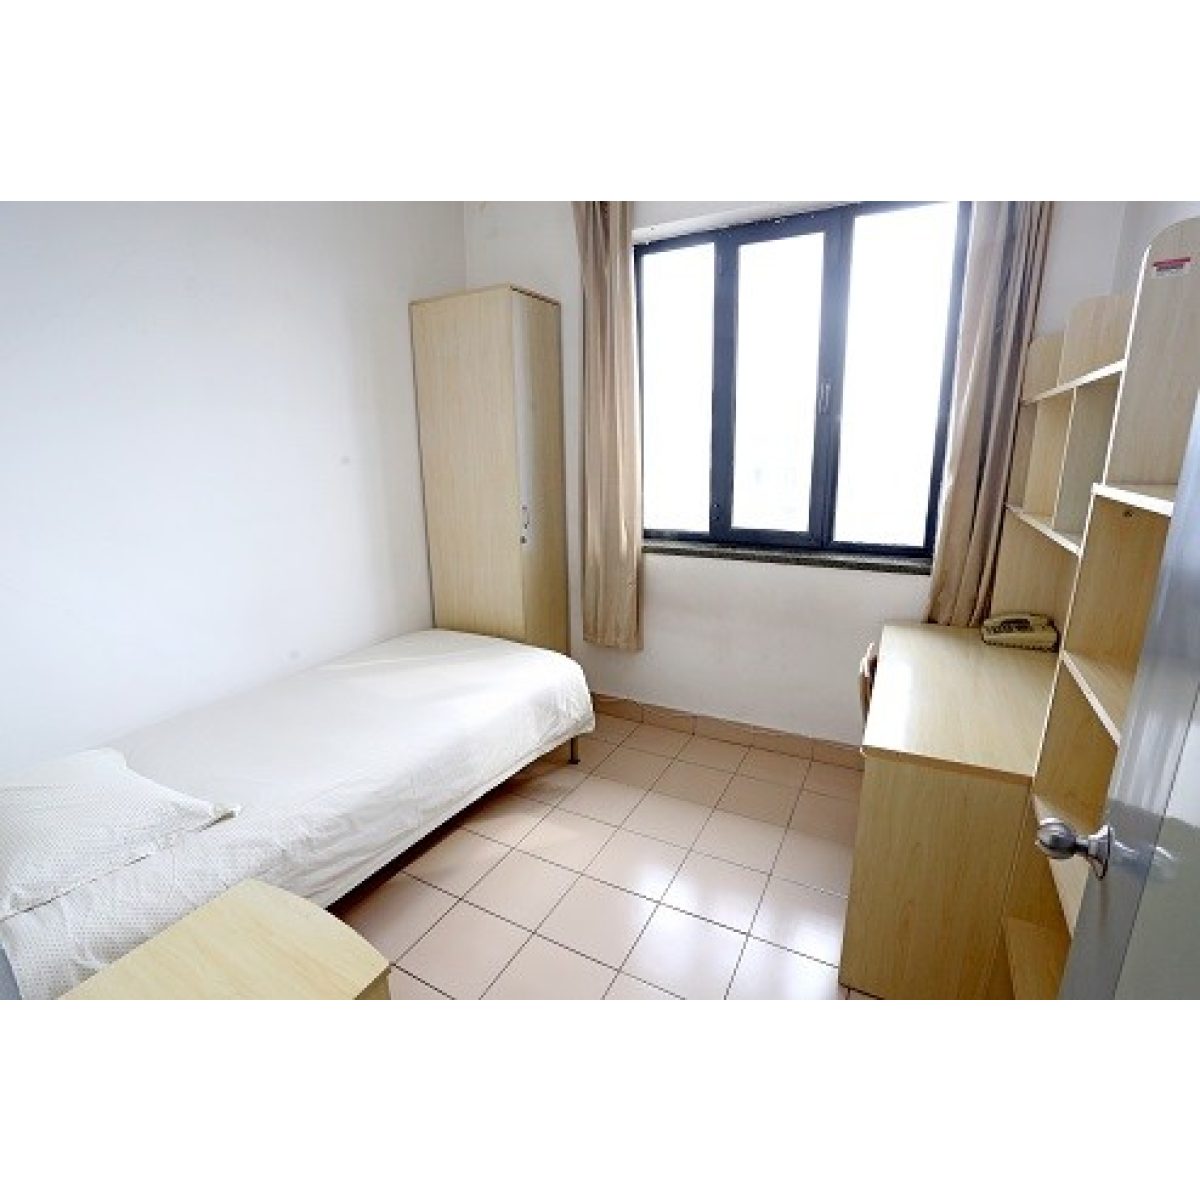 Single room in Linz student dorm 3